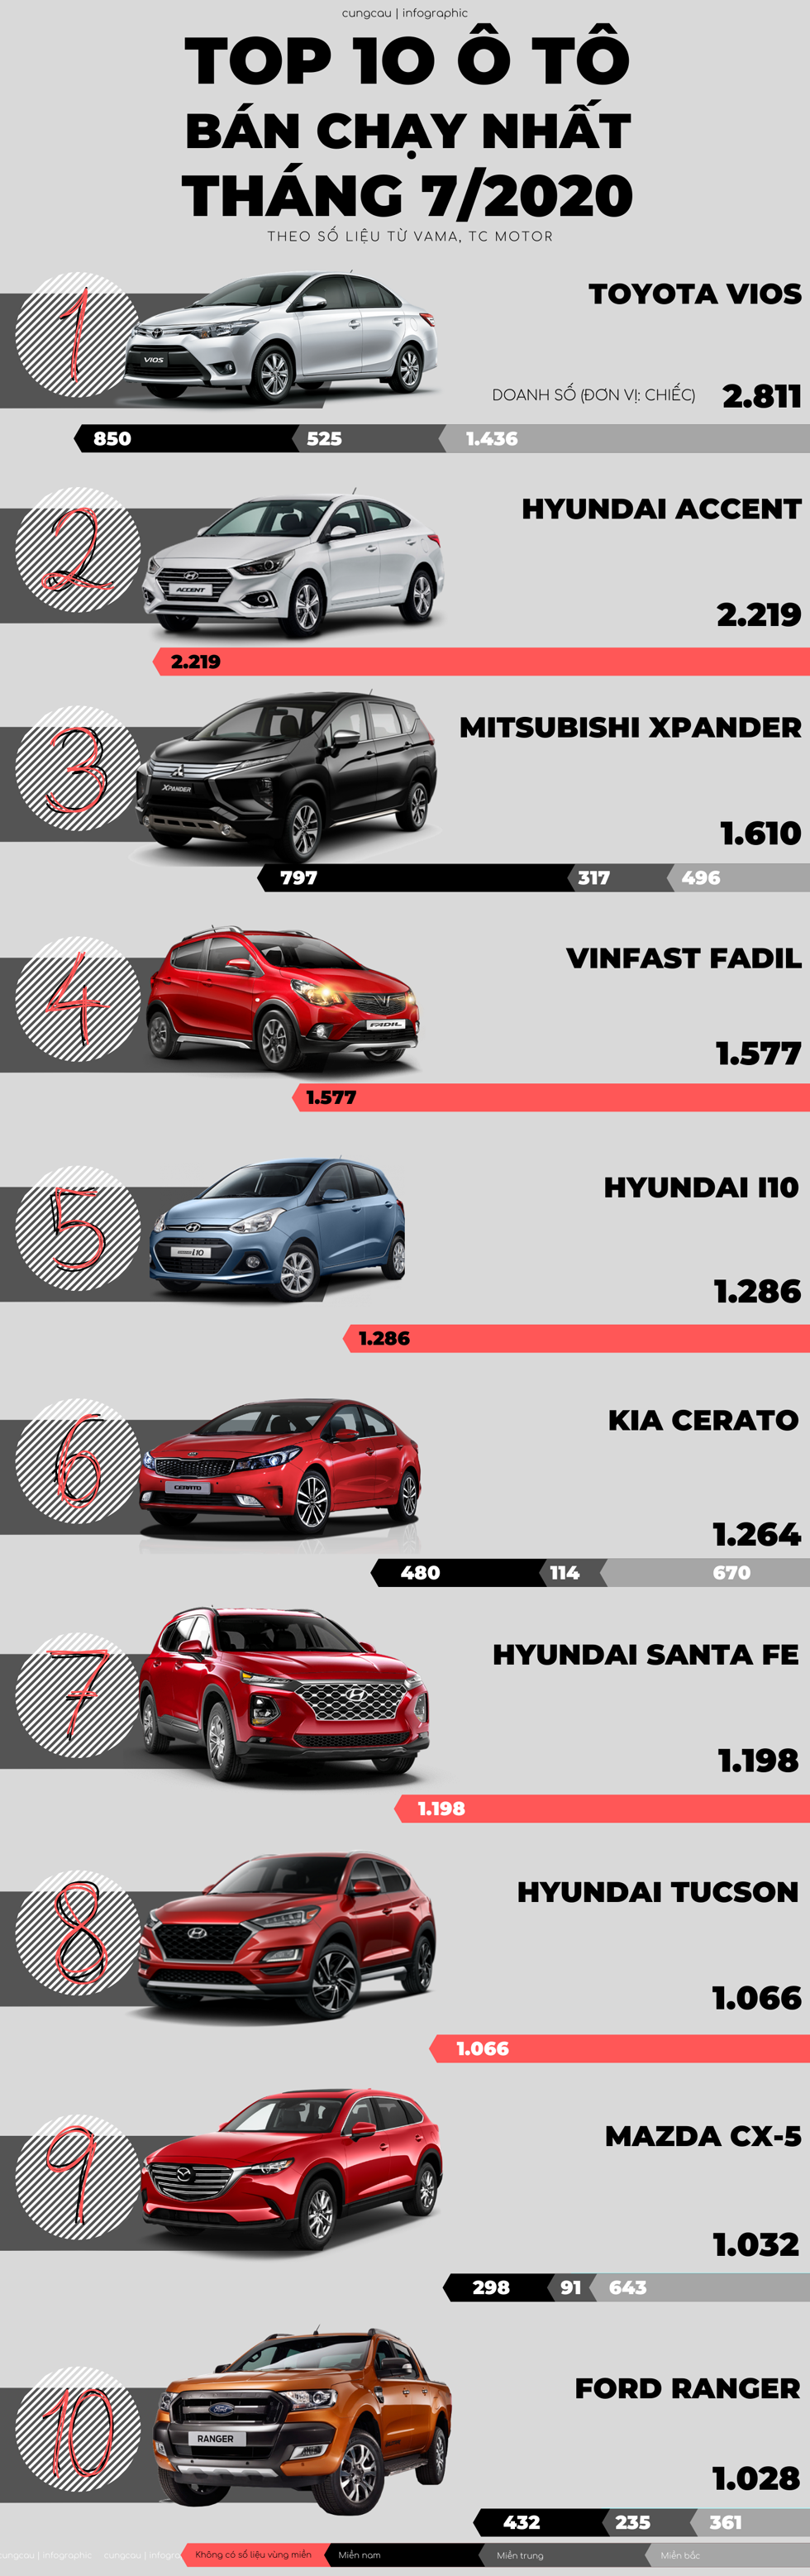 Trong Top 10 ô tô bán chạy nhất tháng 7, dòng Ranger của Ford đứng vị trí cuối cùng. Tuy nhiên đây là lần thứ 4 liên tiếp Ranger có mặt trong BXH này.